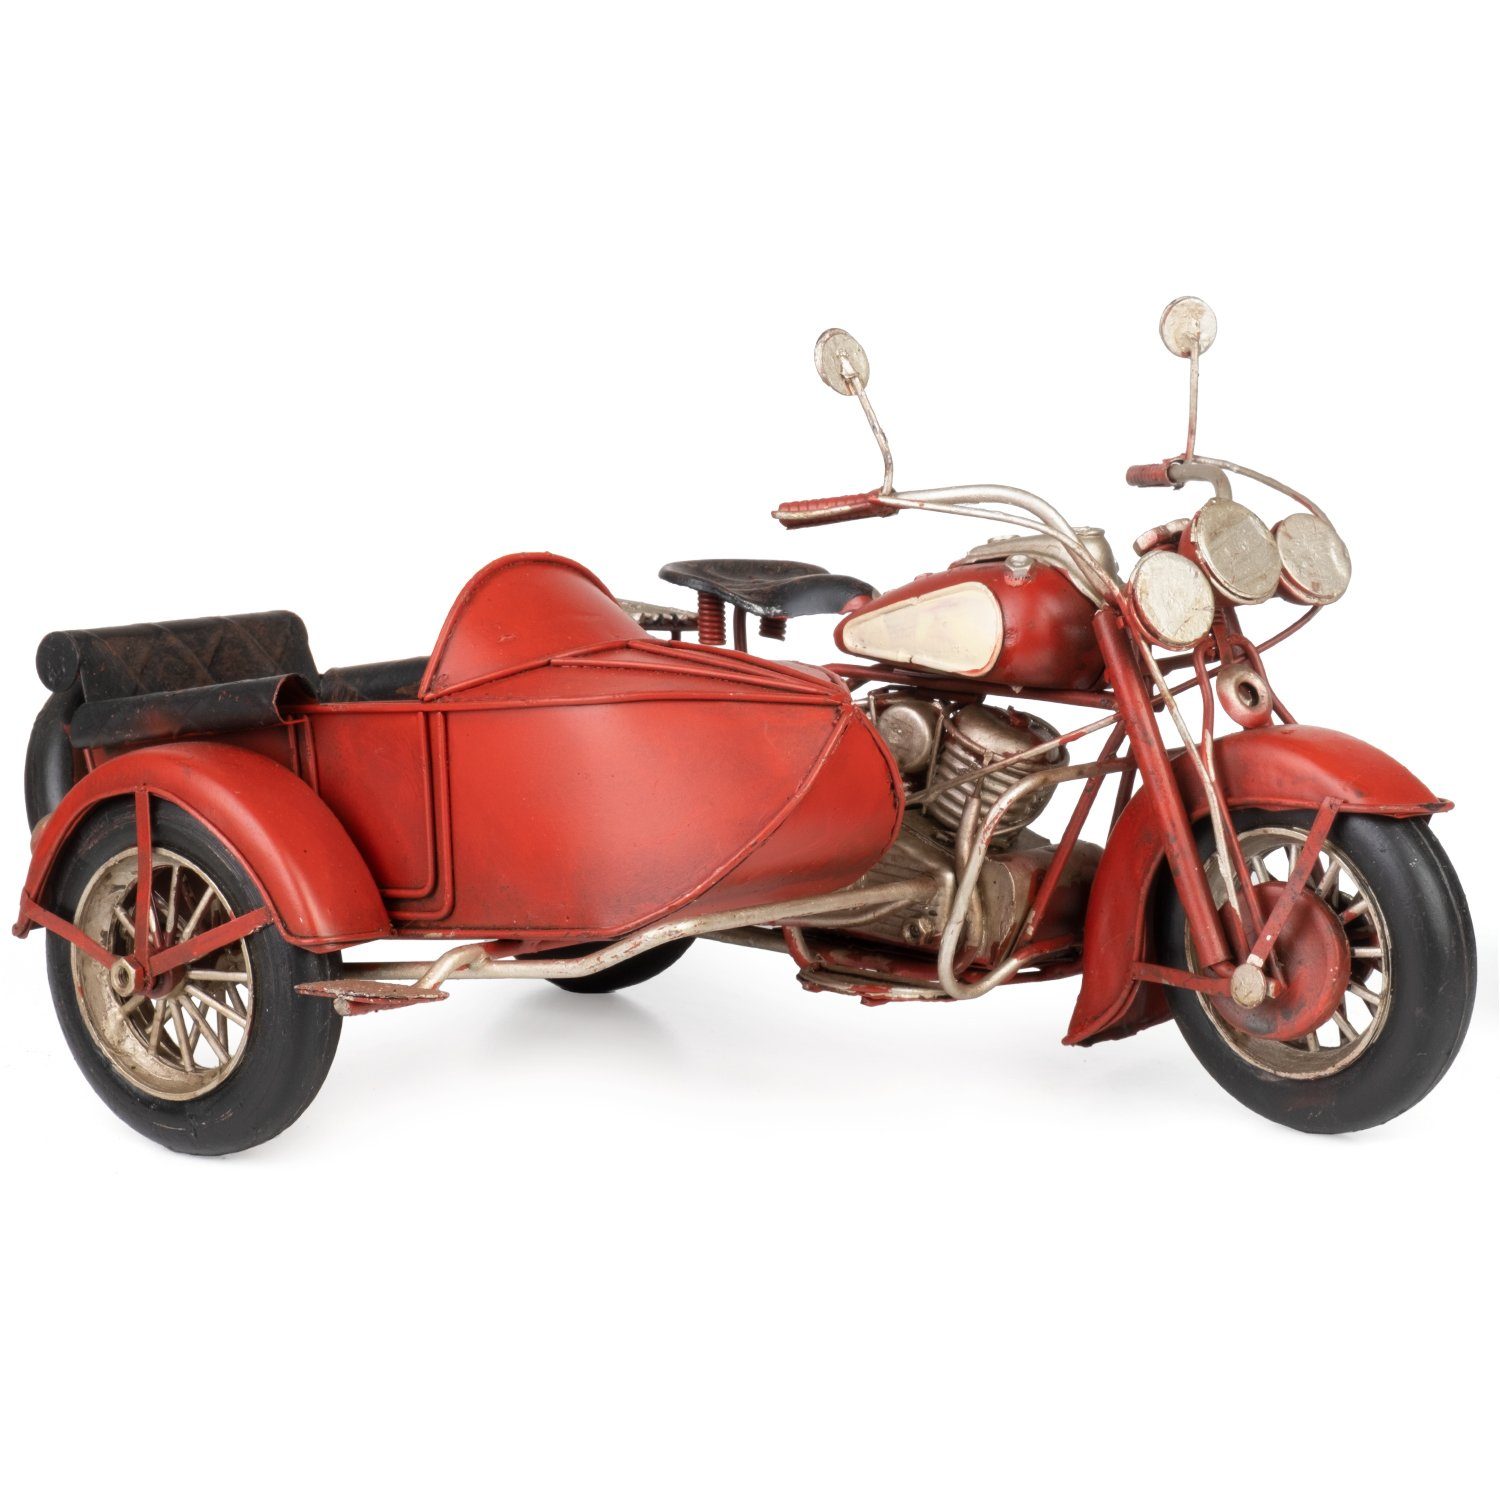 Moritz Dekoobjekt Blech-Deko Motorrad mit Beiwagen rot weiß, Modell Nostalgie Antik-Stil Retro Blechmodell Miniatur Nachbildung